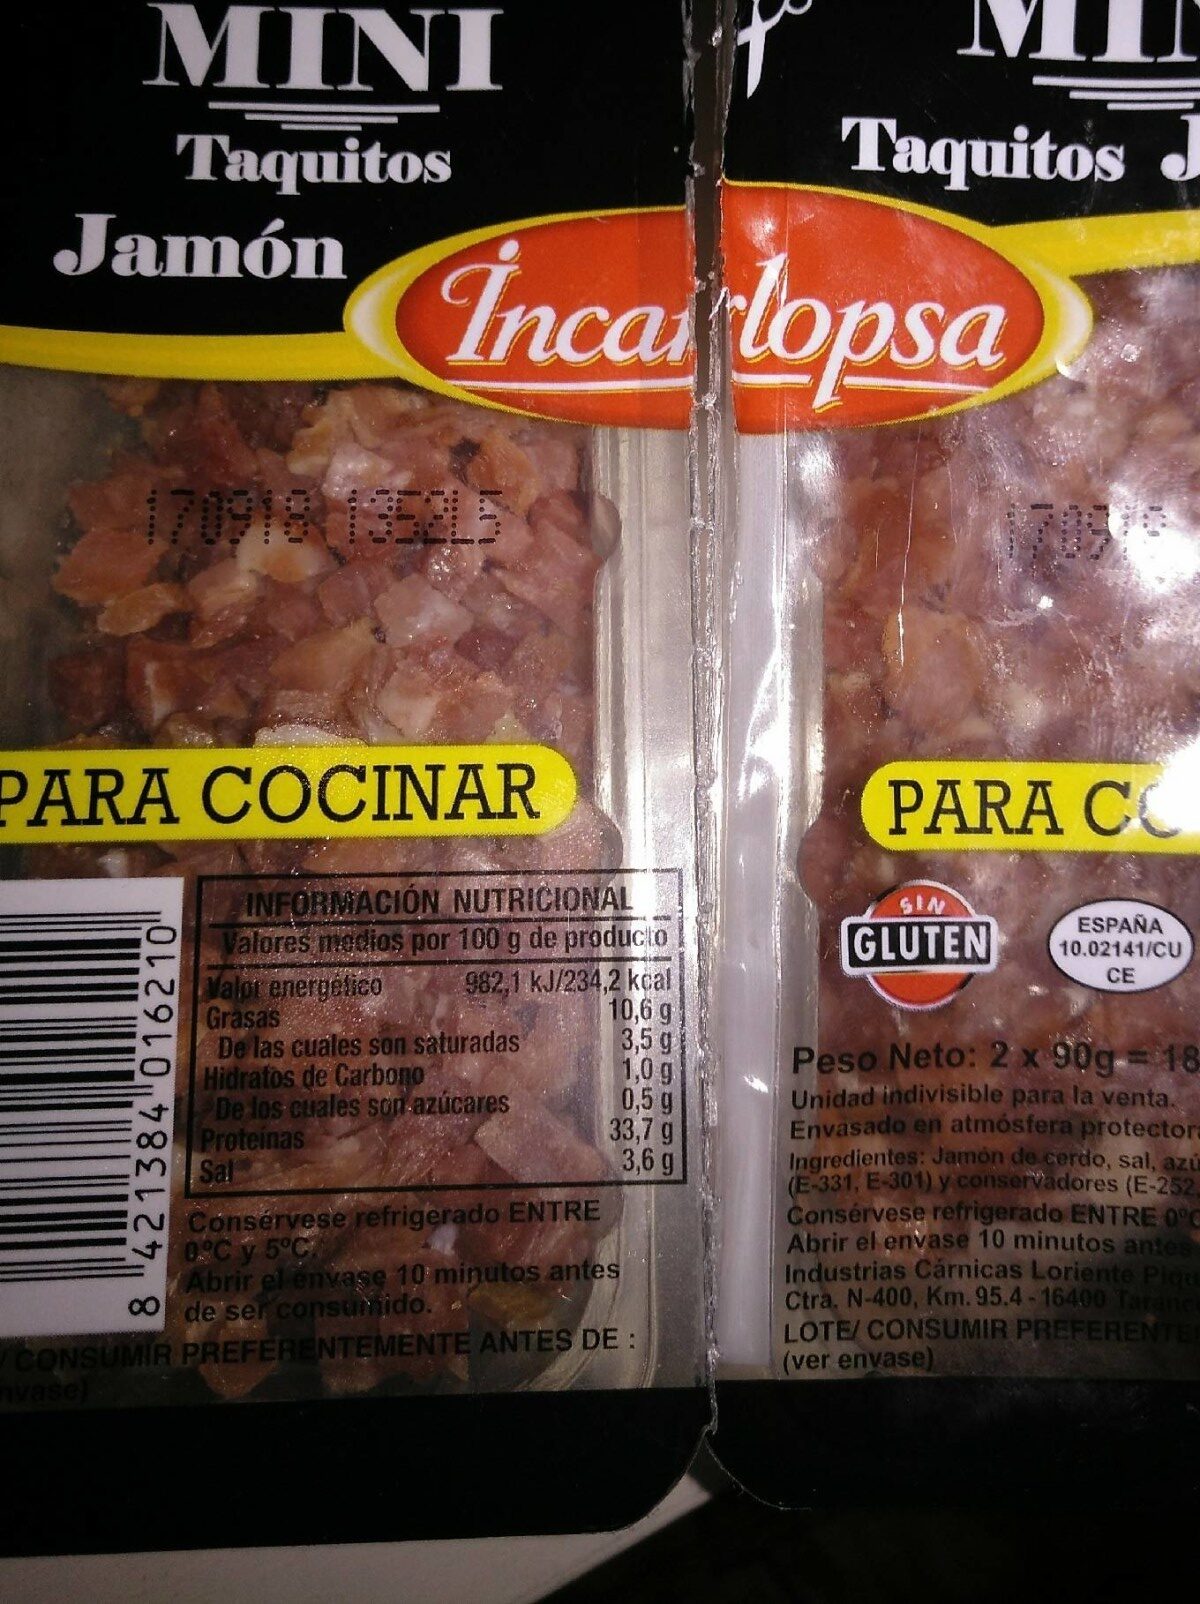 Mini taquitos jamón - Product - es